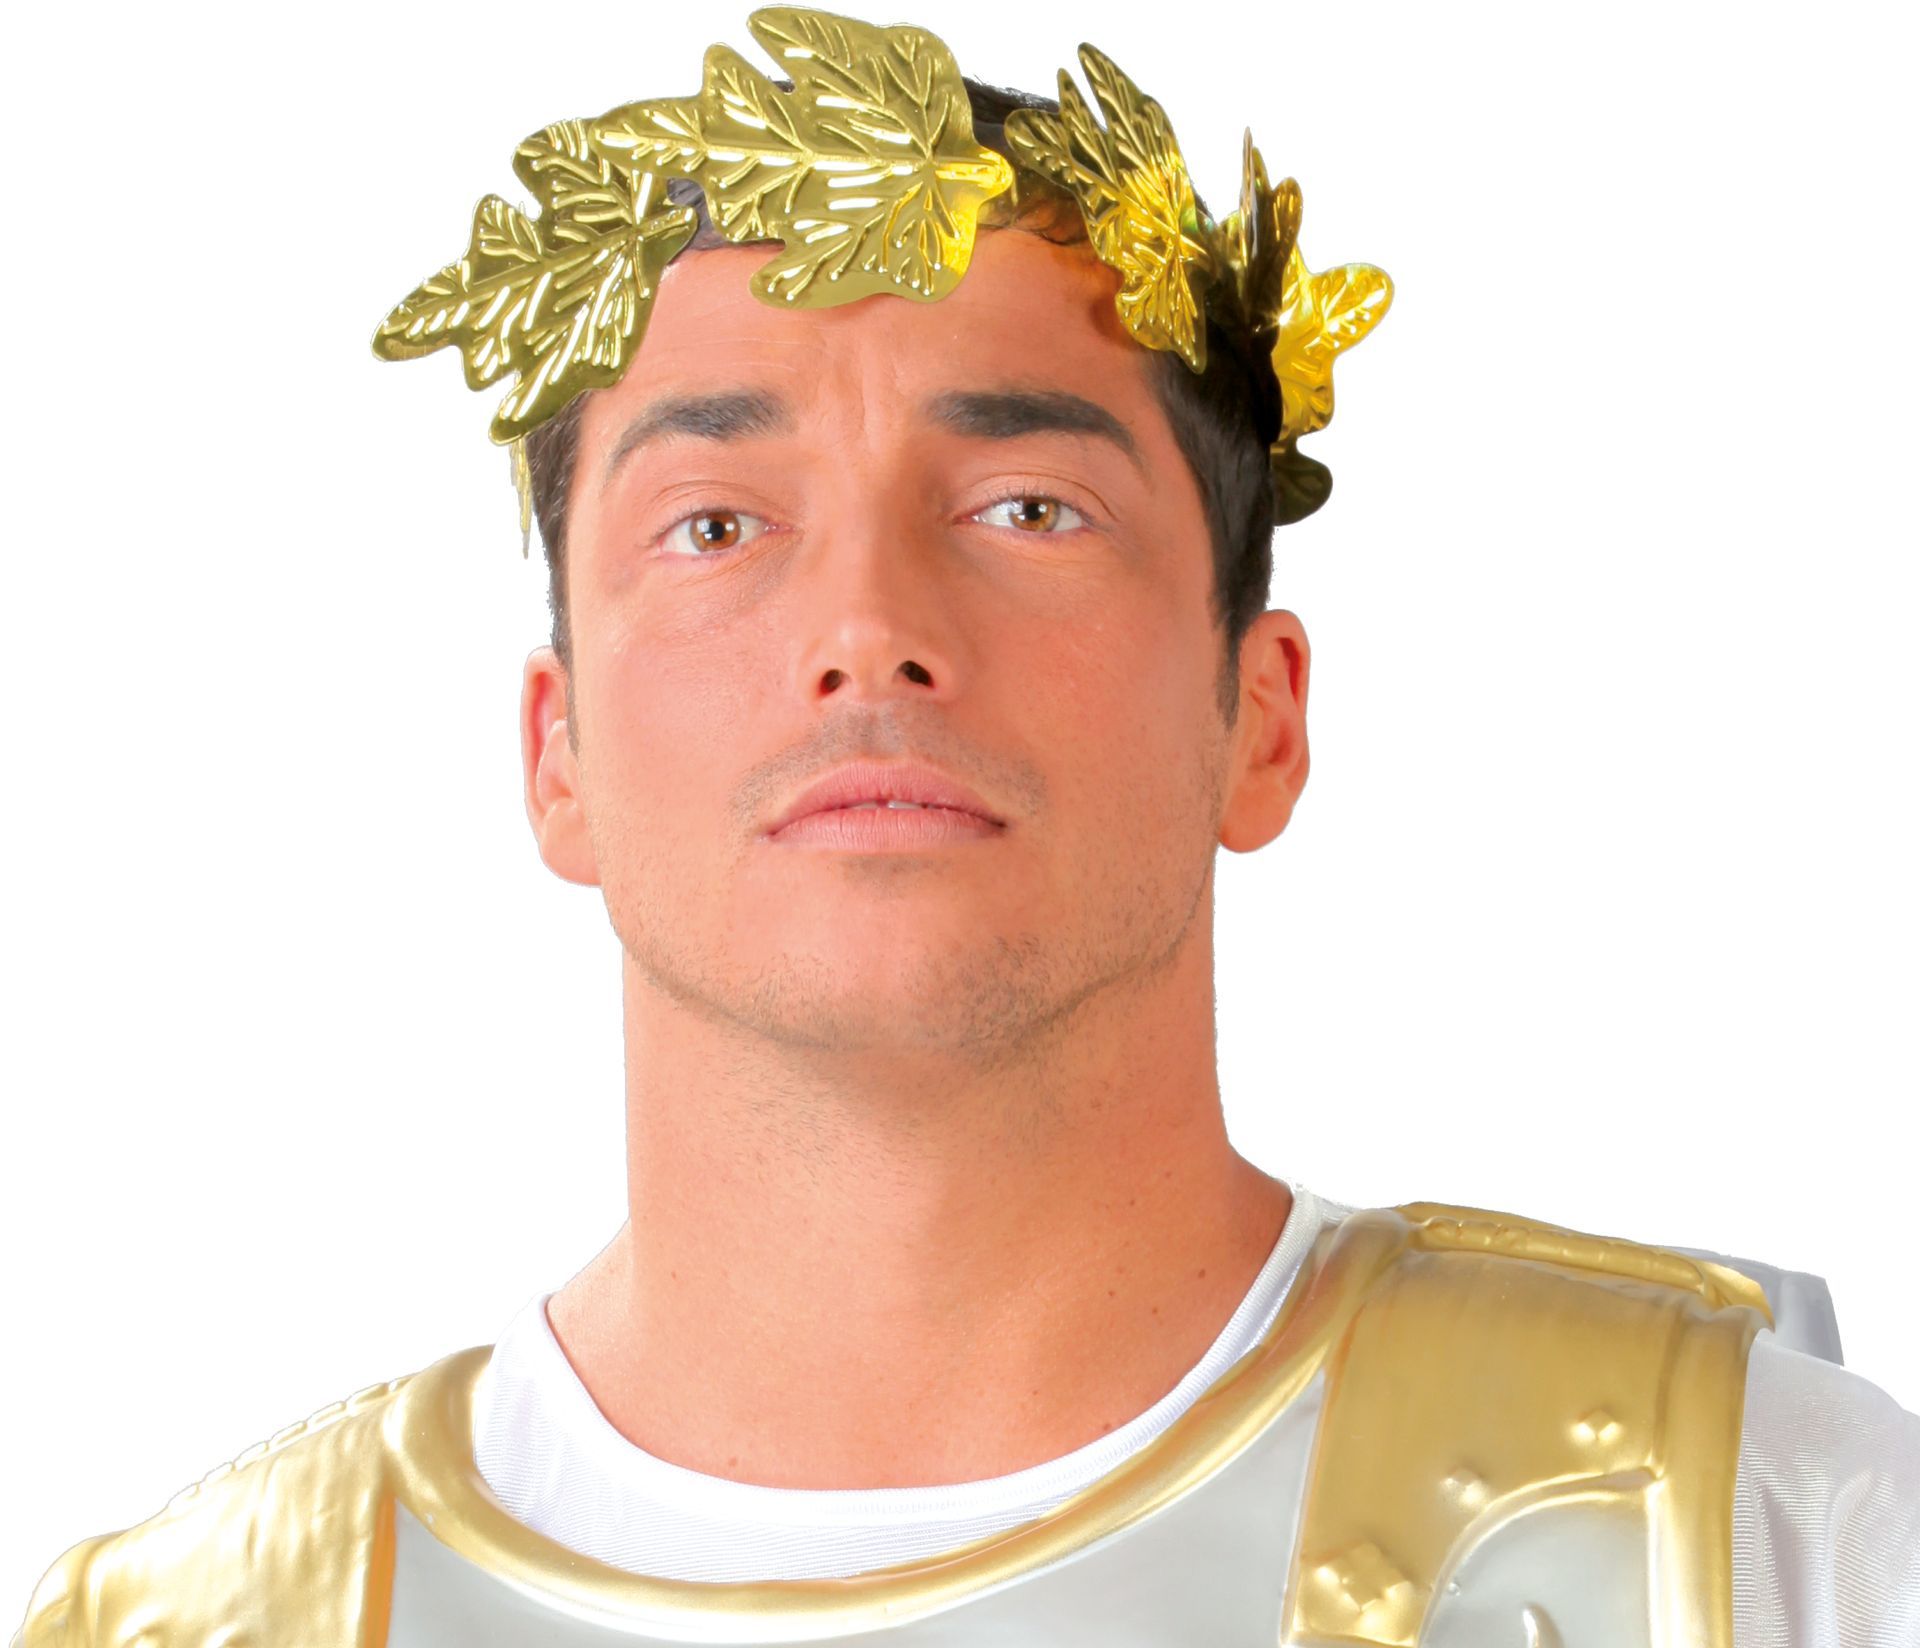 Romeinse keizer krans goud